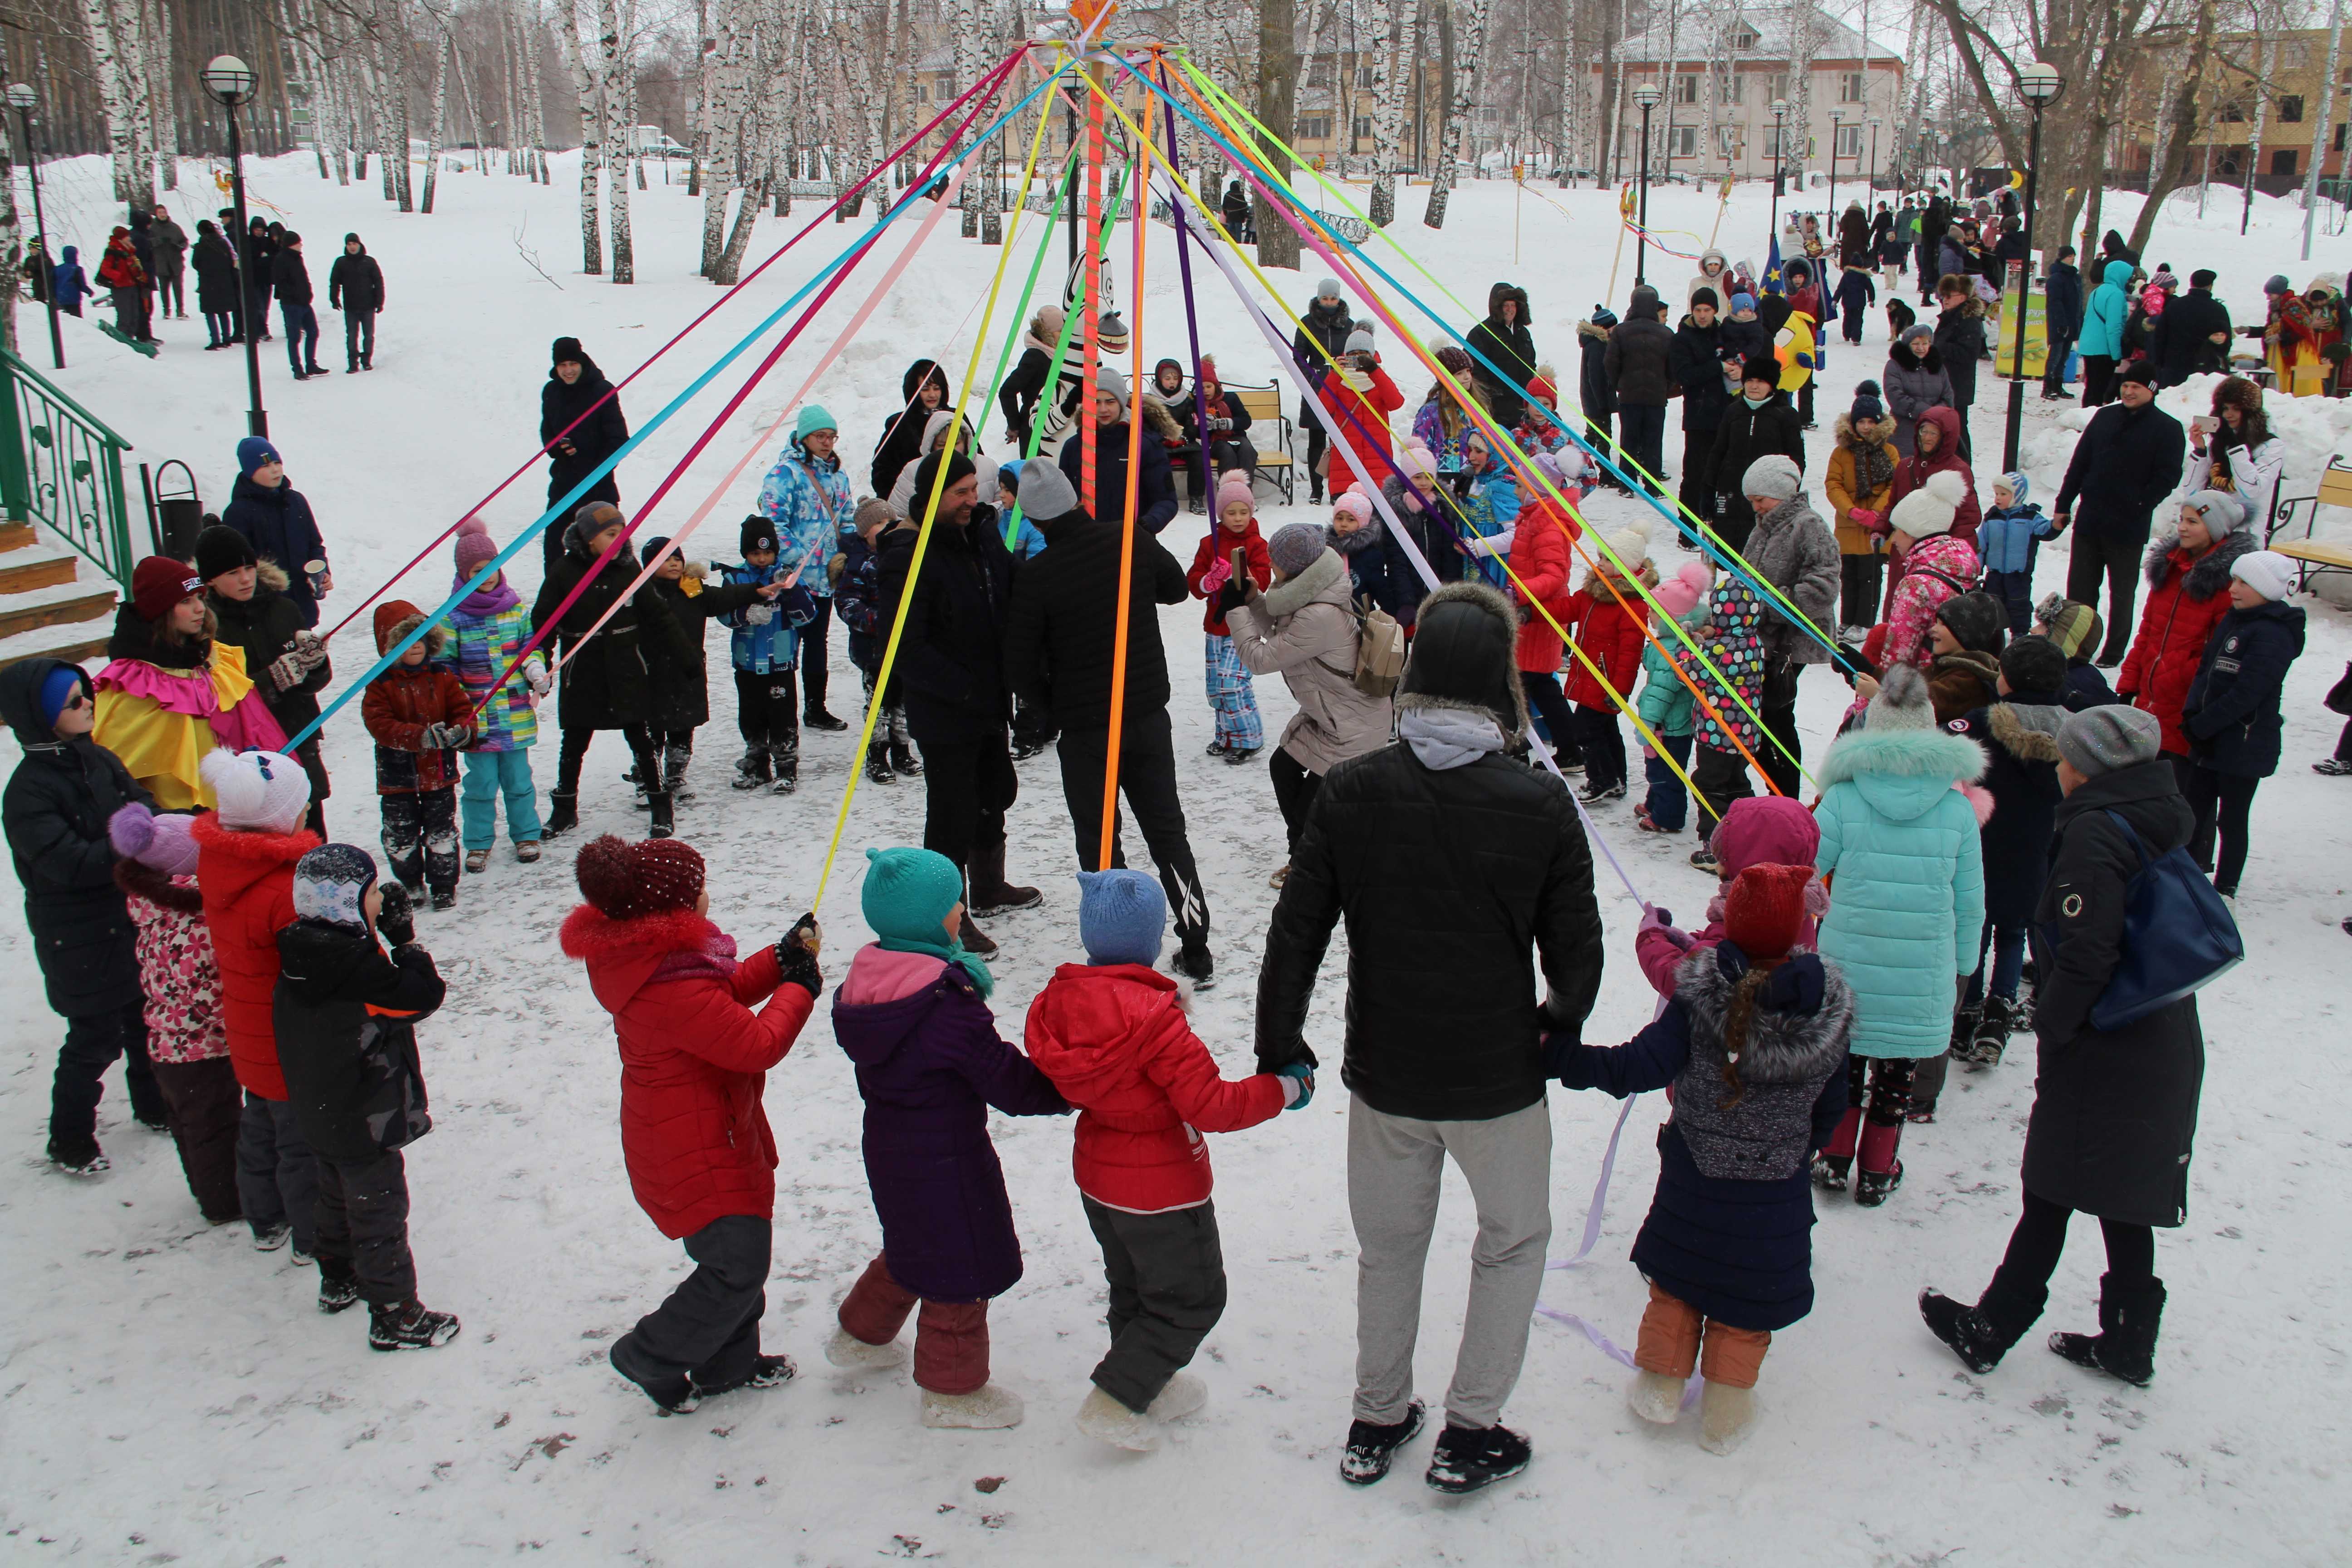 Игры для детей на масленицу на улице - лучшее решение для увлекательного мероприятия | блог valsport.ru